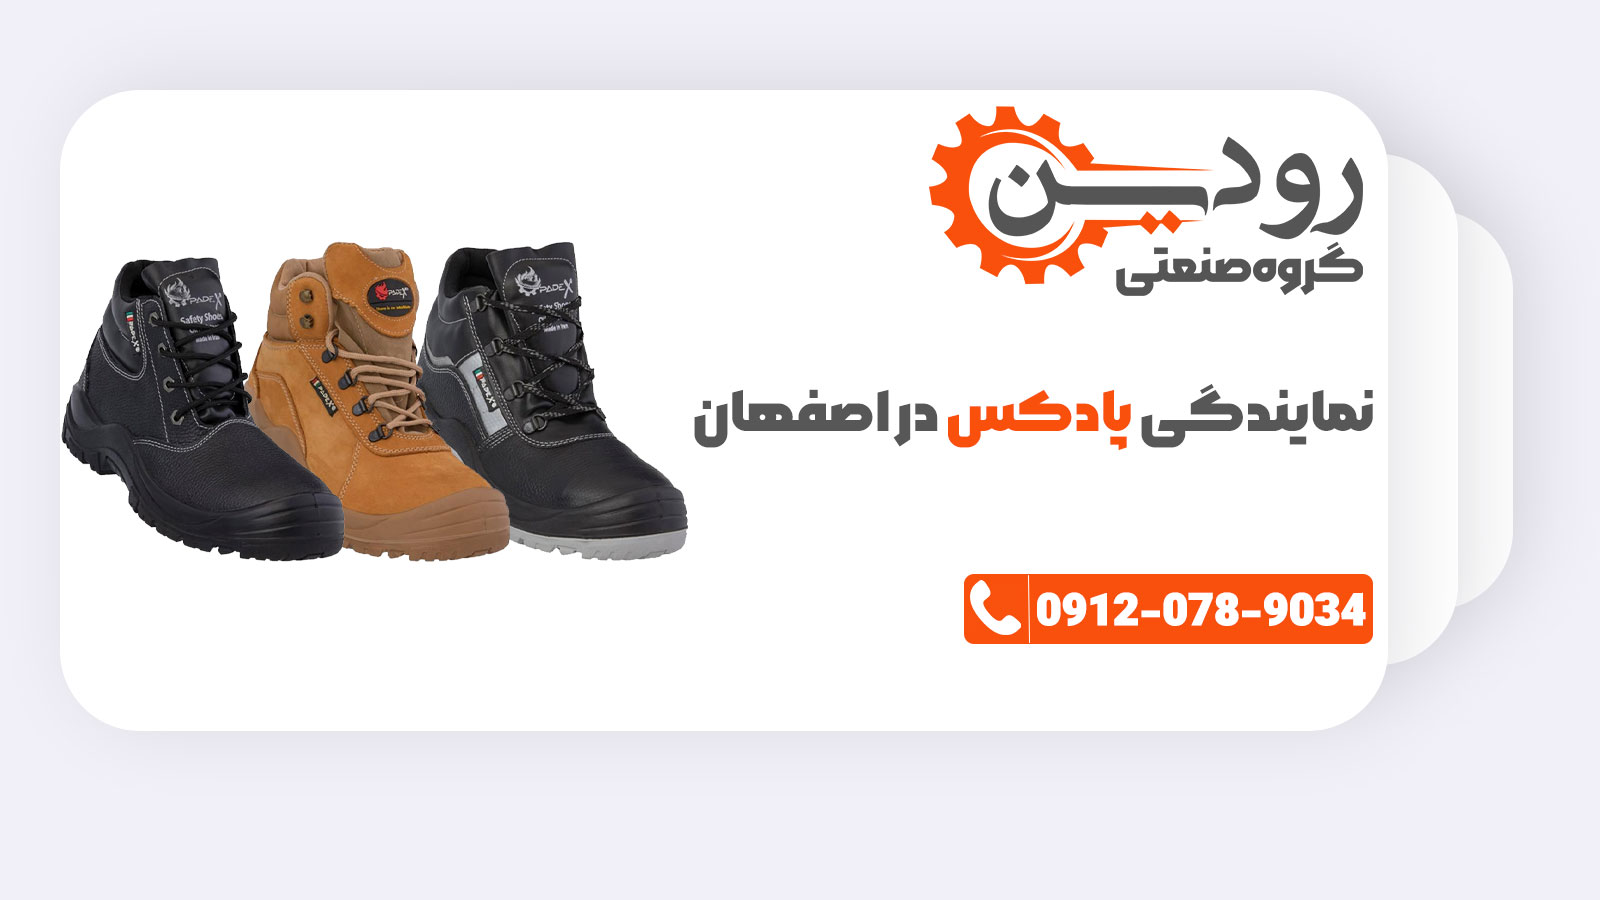 نمایندگی کفش ایمنی پادکس فروشگاه کفش ایمنی اصفهان را راه انداخته است.